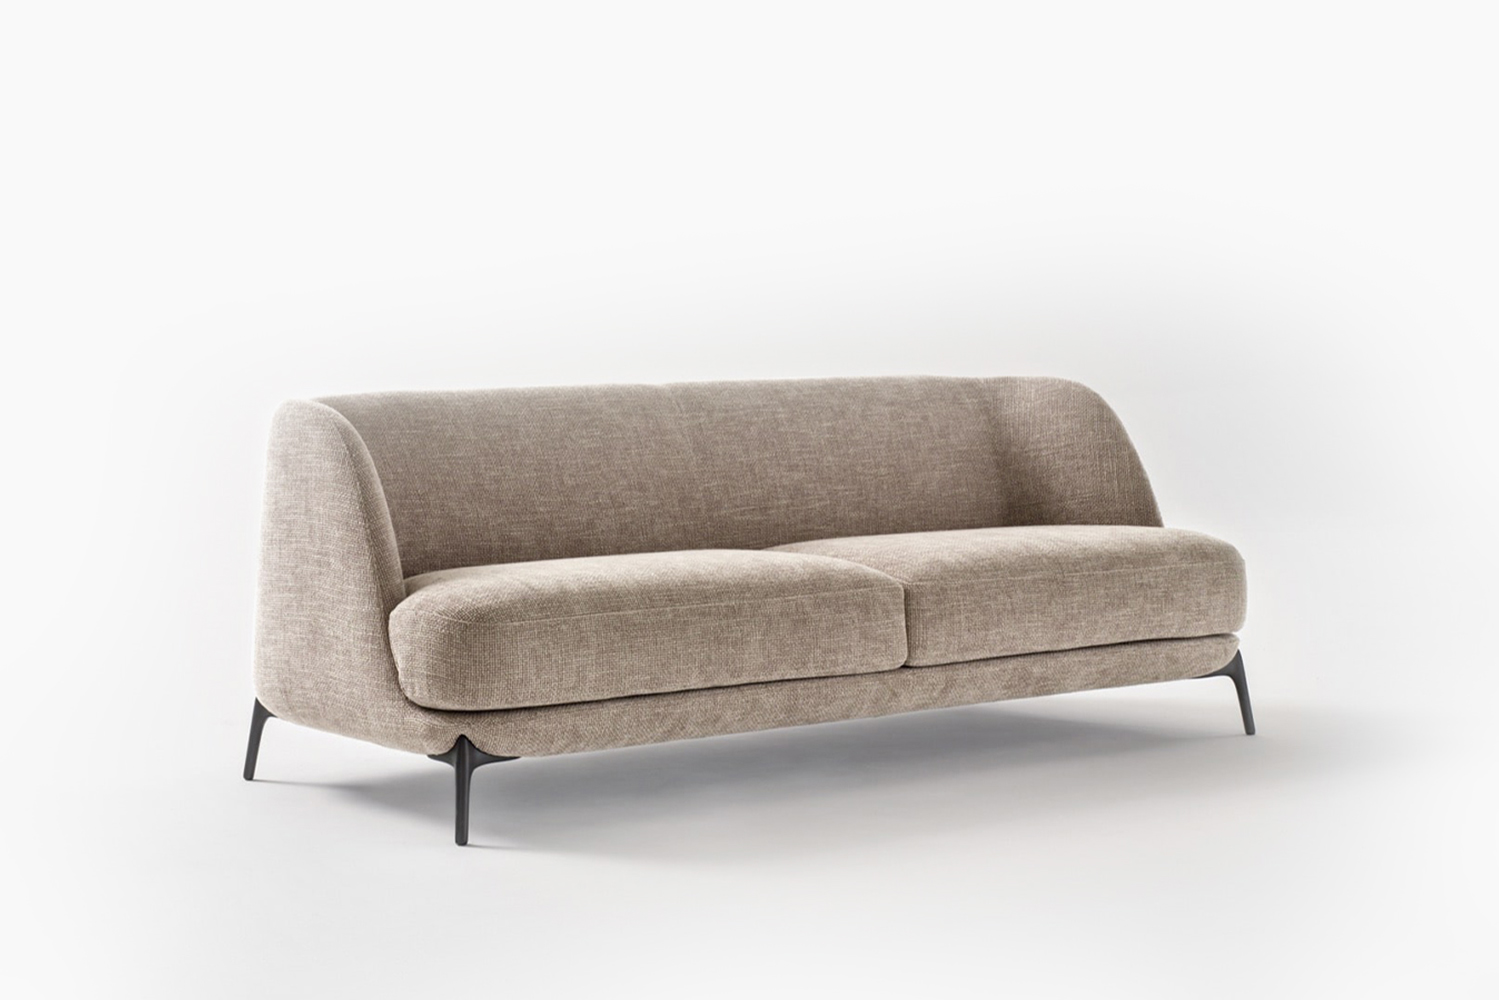 Velvet luxury modern Italian sofa by Novamobili. Sold by Krieder UK.